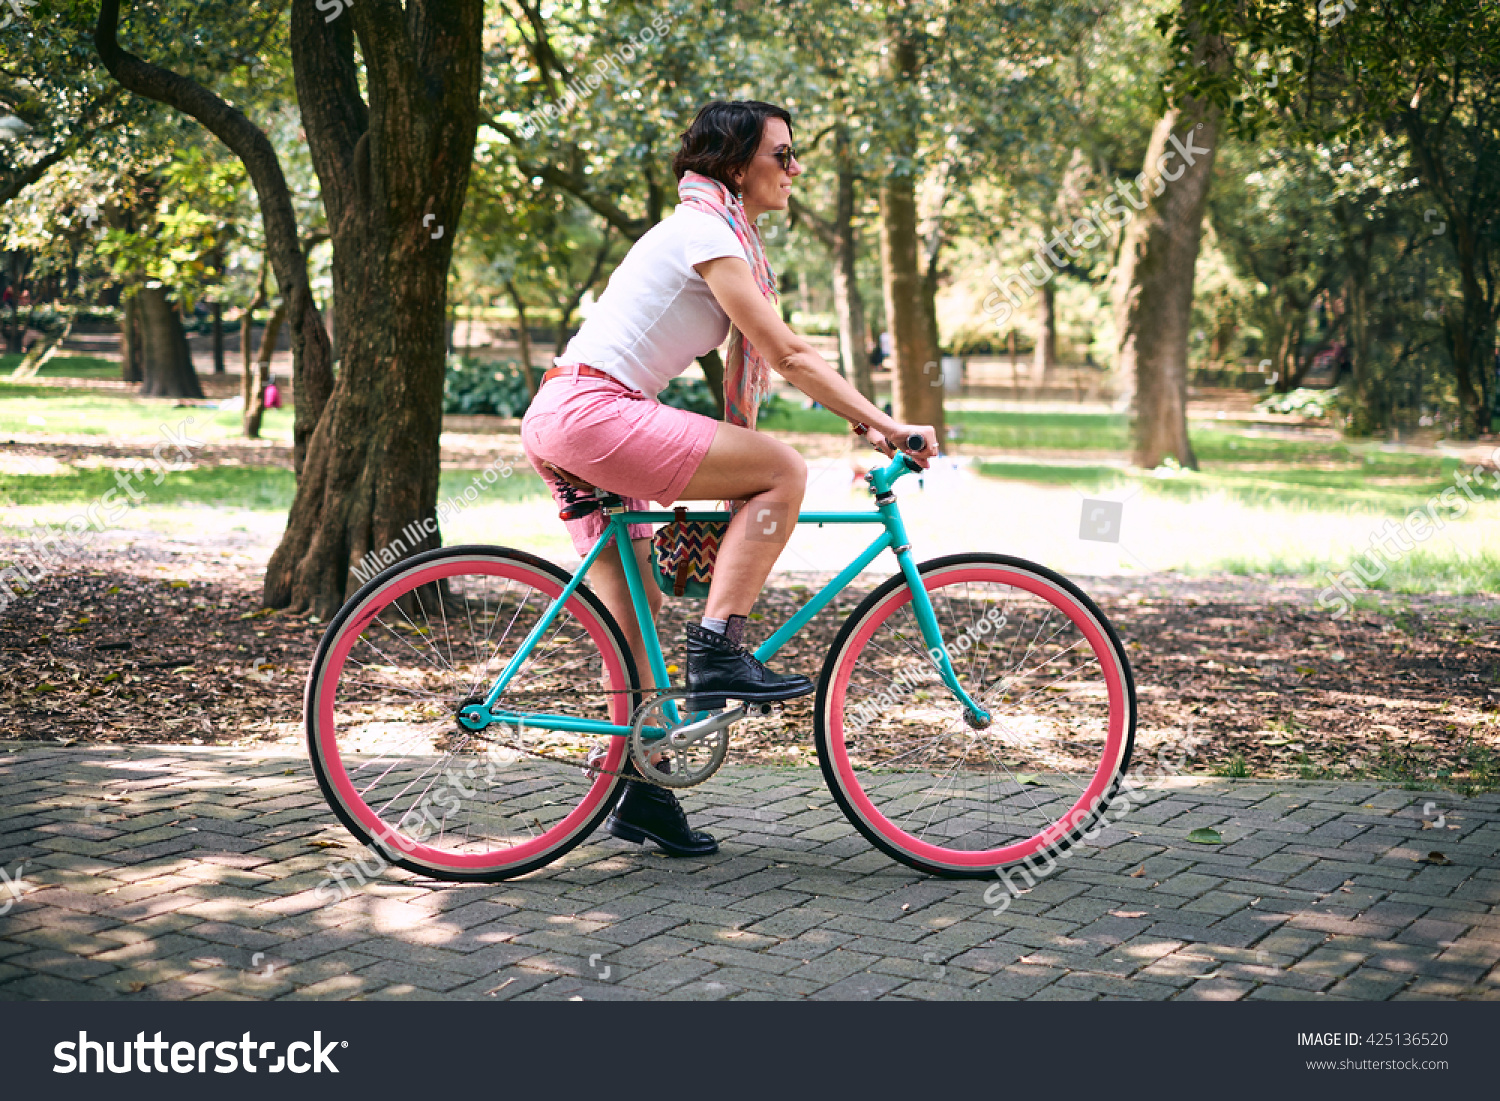 girl fixie bikes